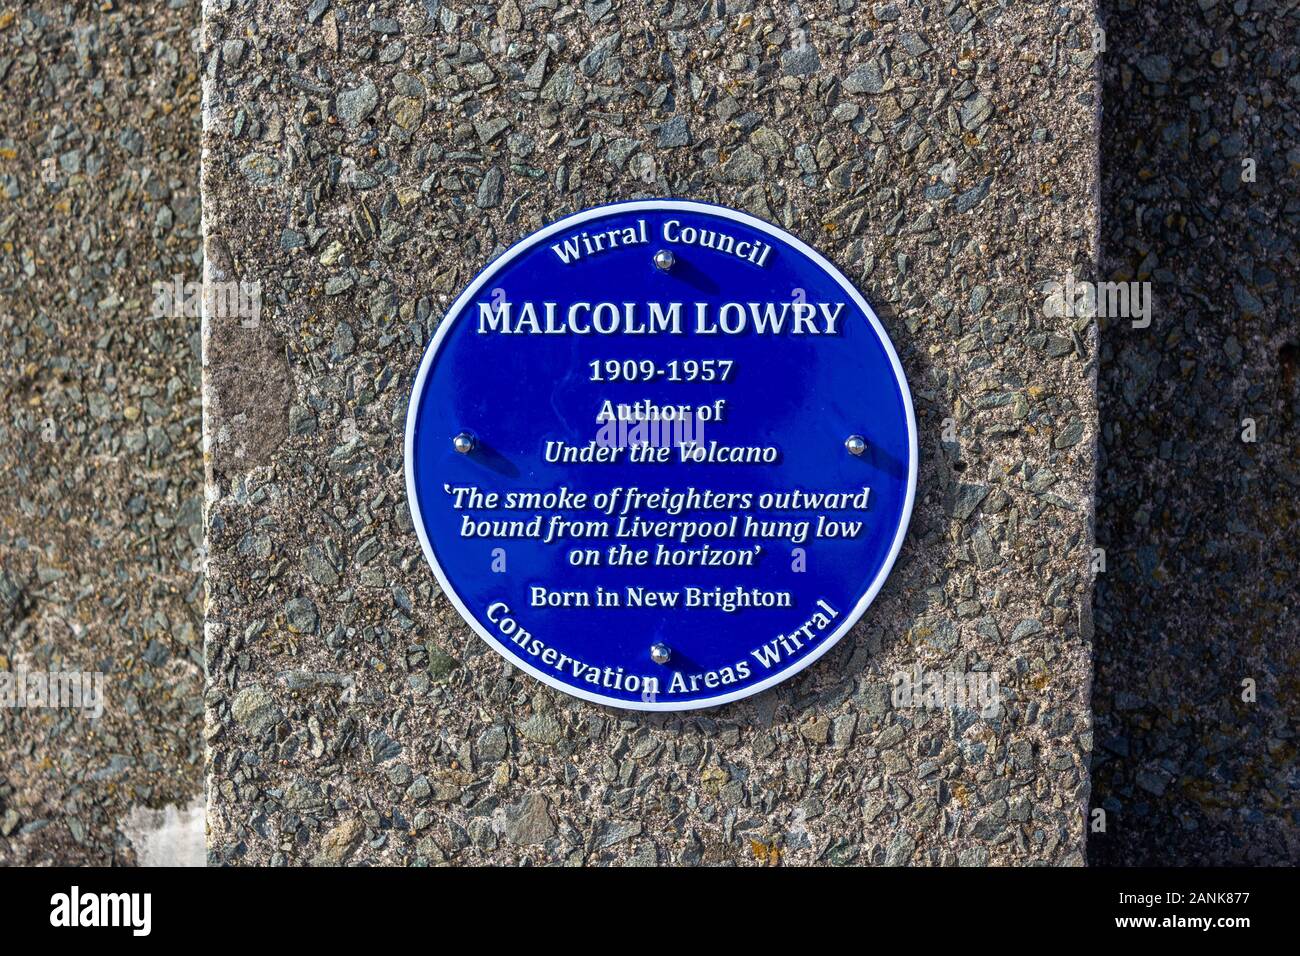 Malcolm Lowry blu commemorative plaque, autore di Sotto il vulcano, sul lungomare a parete, New Brighton, Wirral Foto Stock